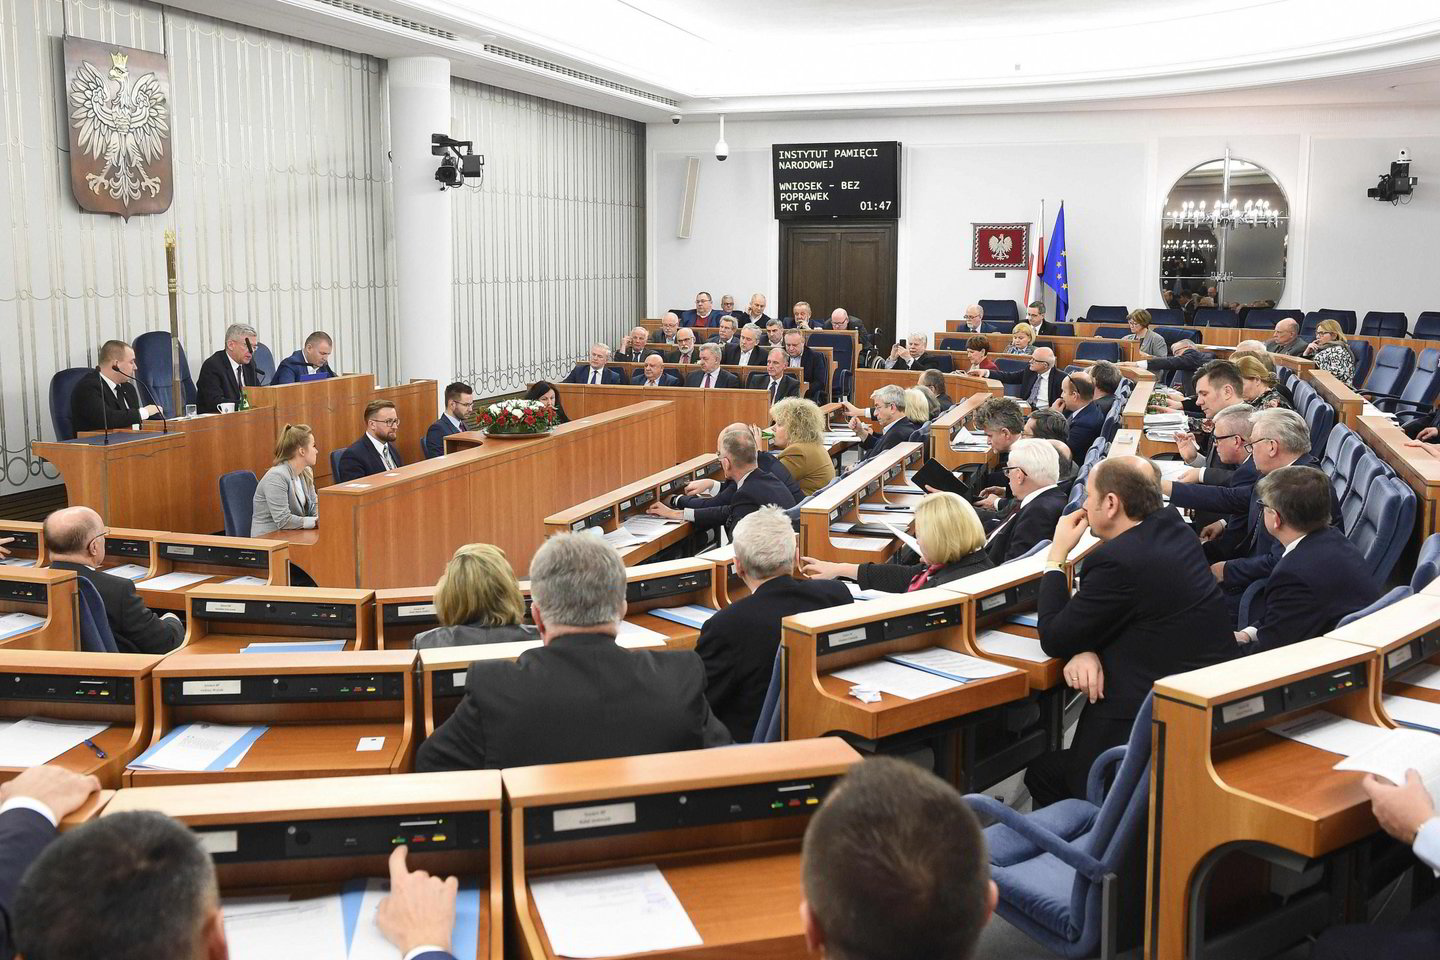  Žemieji parlamento rūmai taip pat išreiškė savo solidarumą su Lenkijos piliečiais, kuriuos persekiojo komunistų režimas, nepriklausomai nuo jų tautybės, religinių įsitikinimų ir gyvenamosios vietos.<br> AFP/Scanpix nuotr.